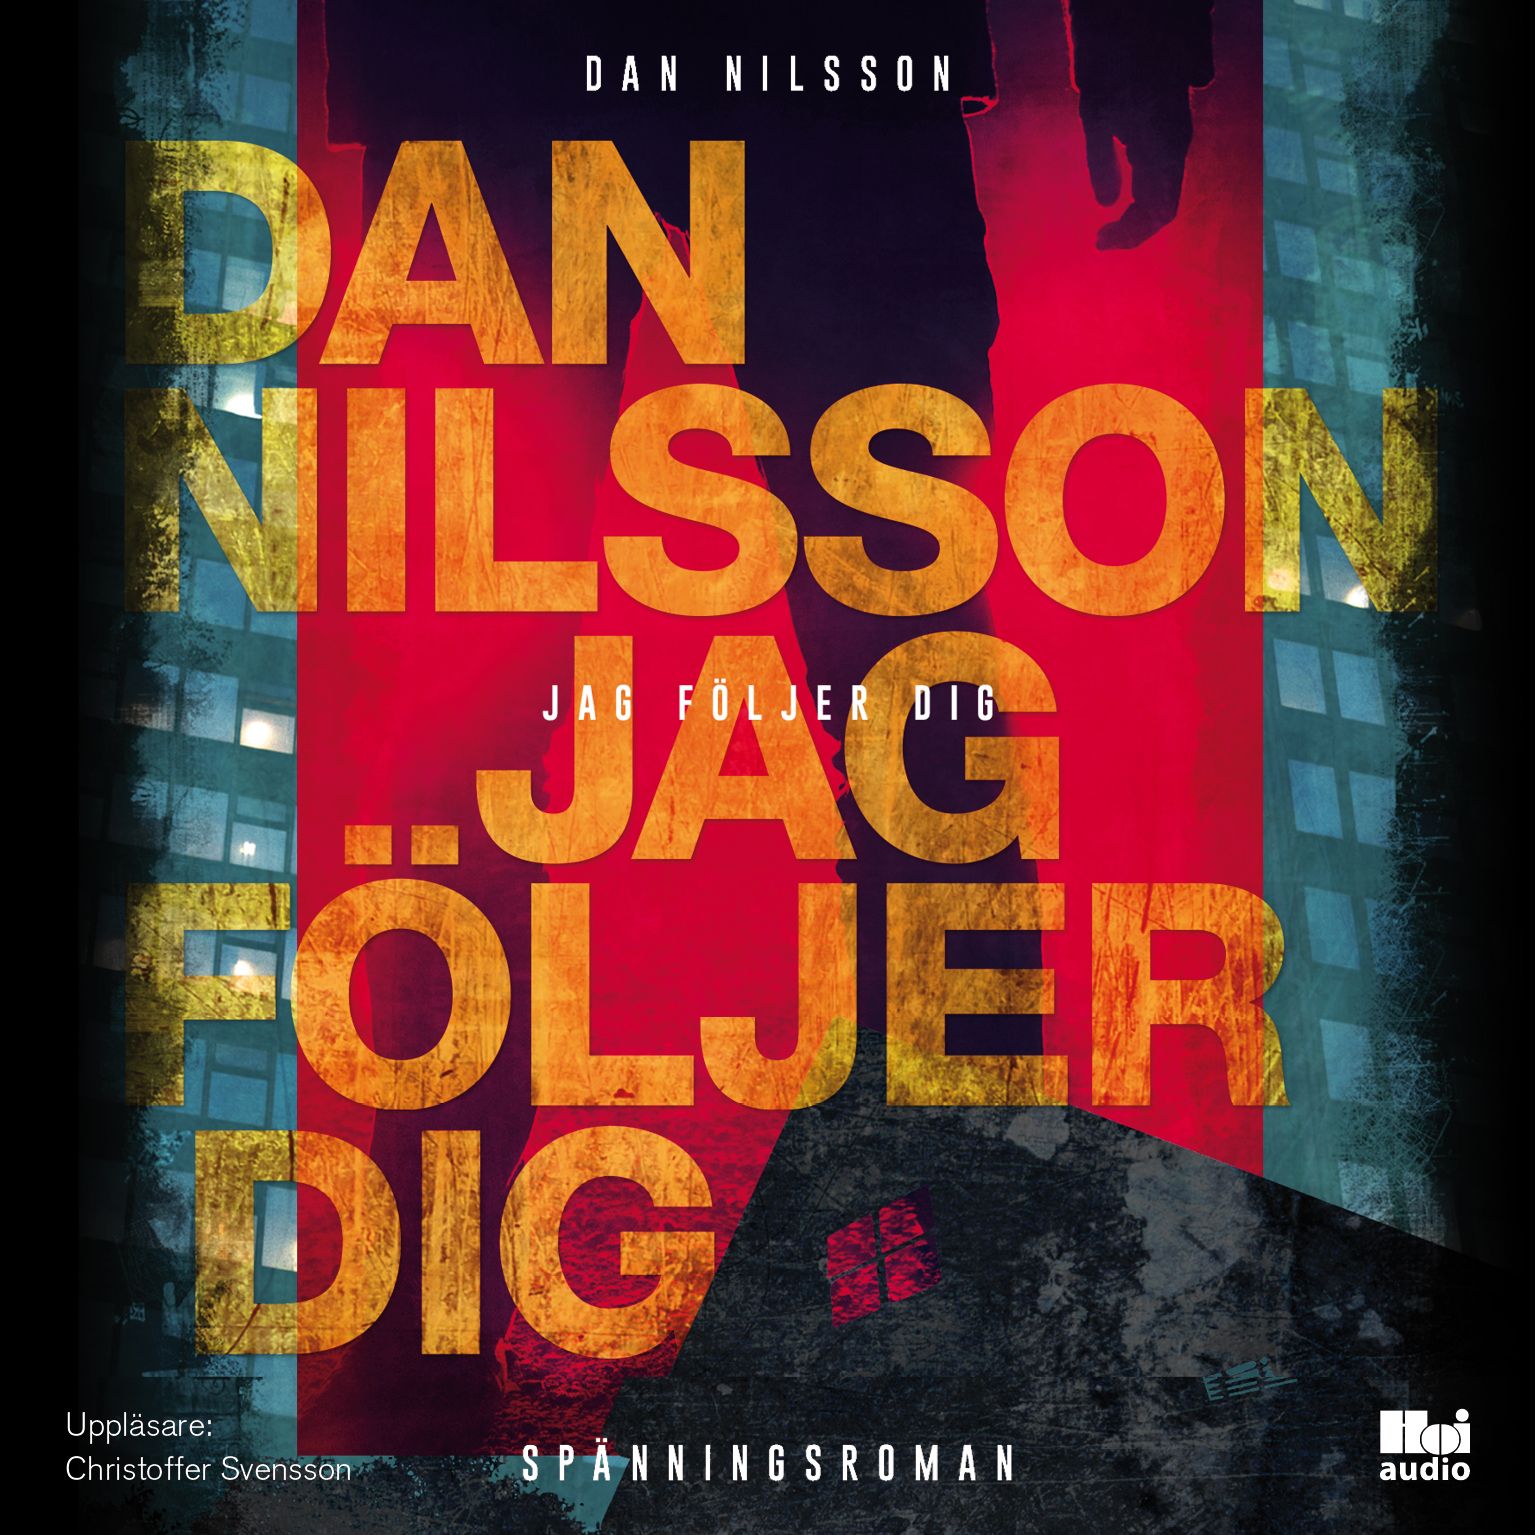 Jag följer dig, lydbog af Dan Nilsson